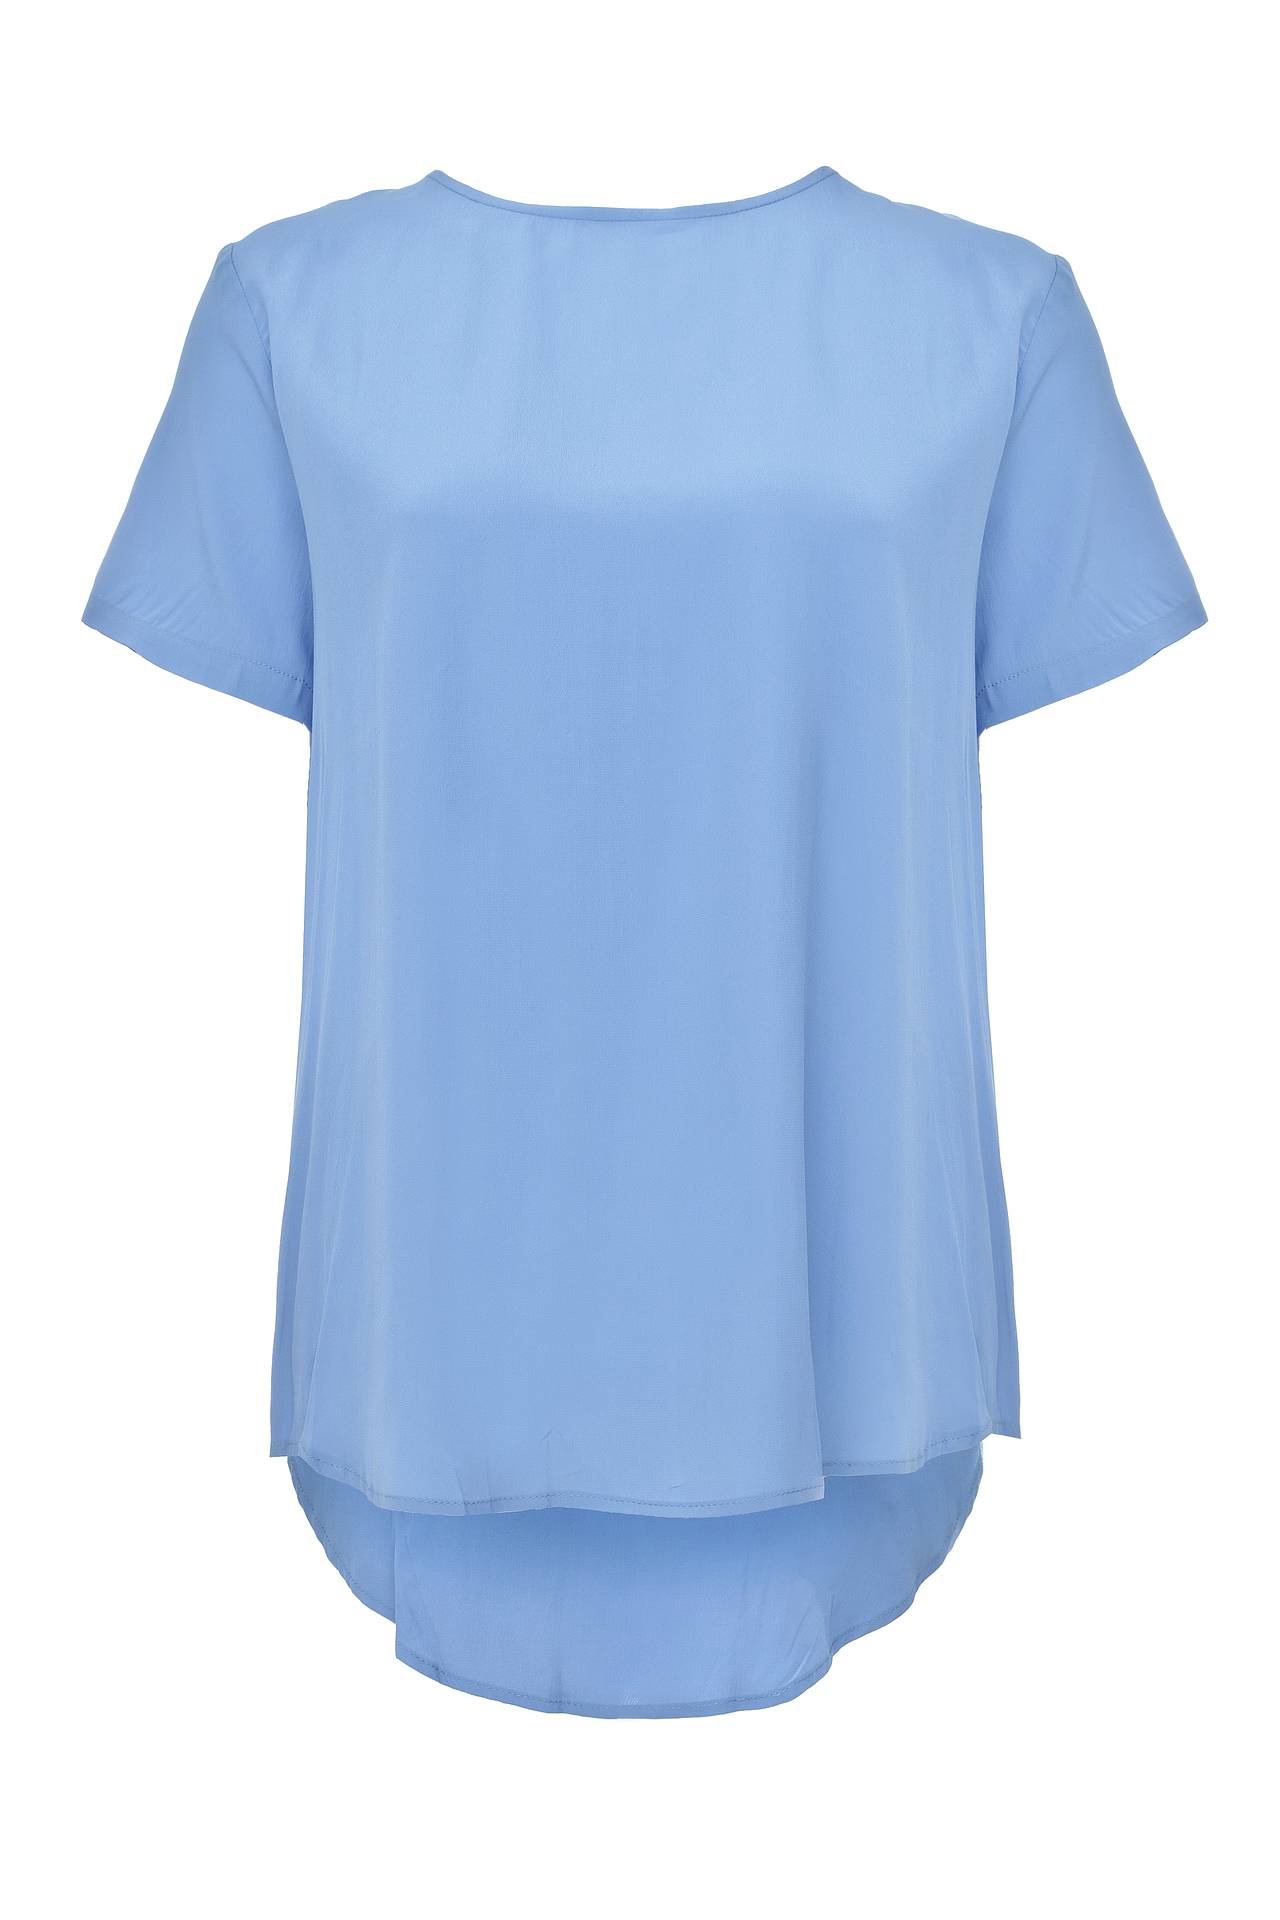 Одежда женская Блузка ATOS LOMBARDINI (P6PP06024/16.2). Купить за 4650 руб.